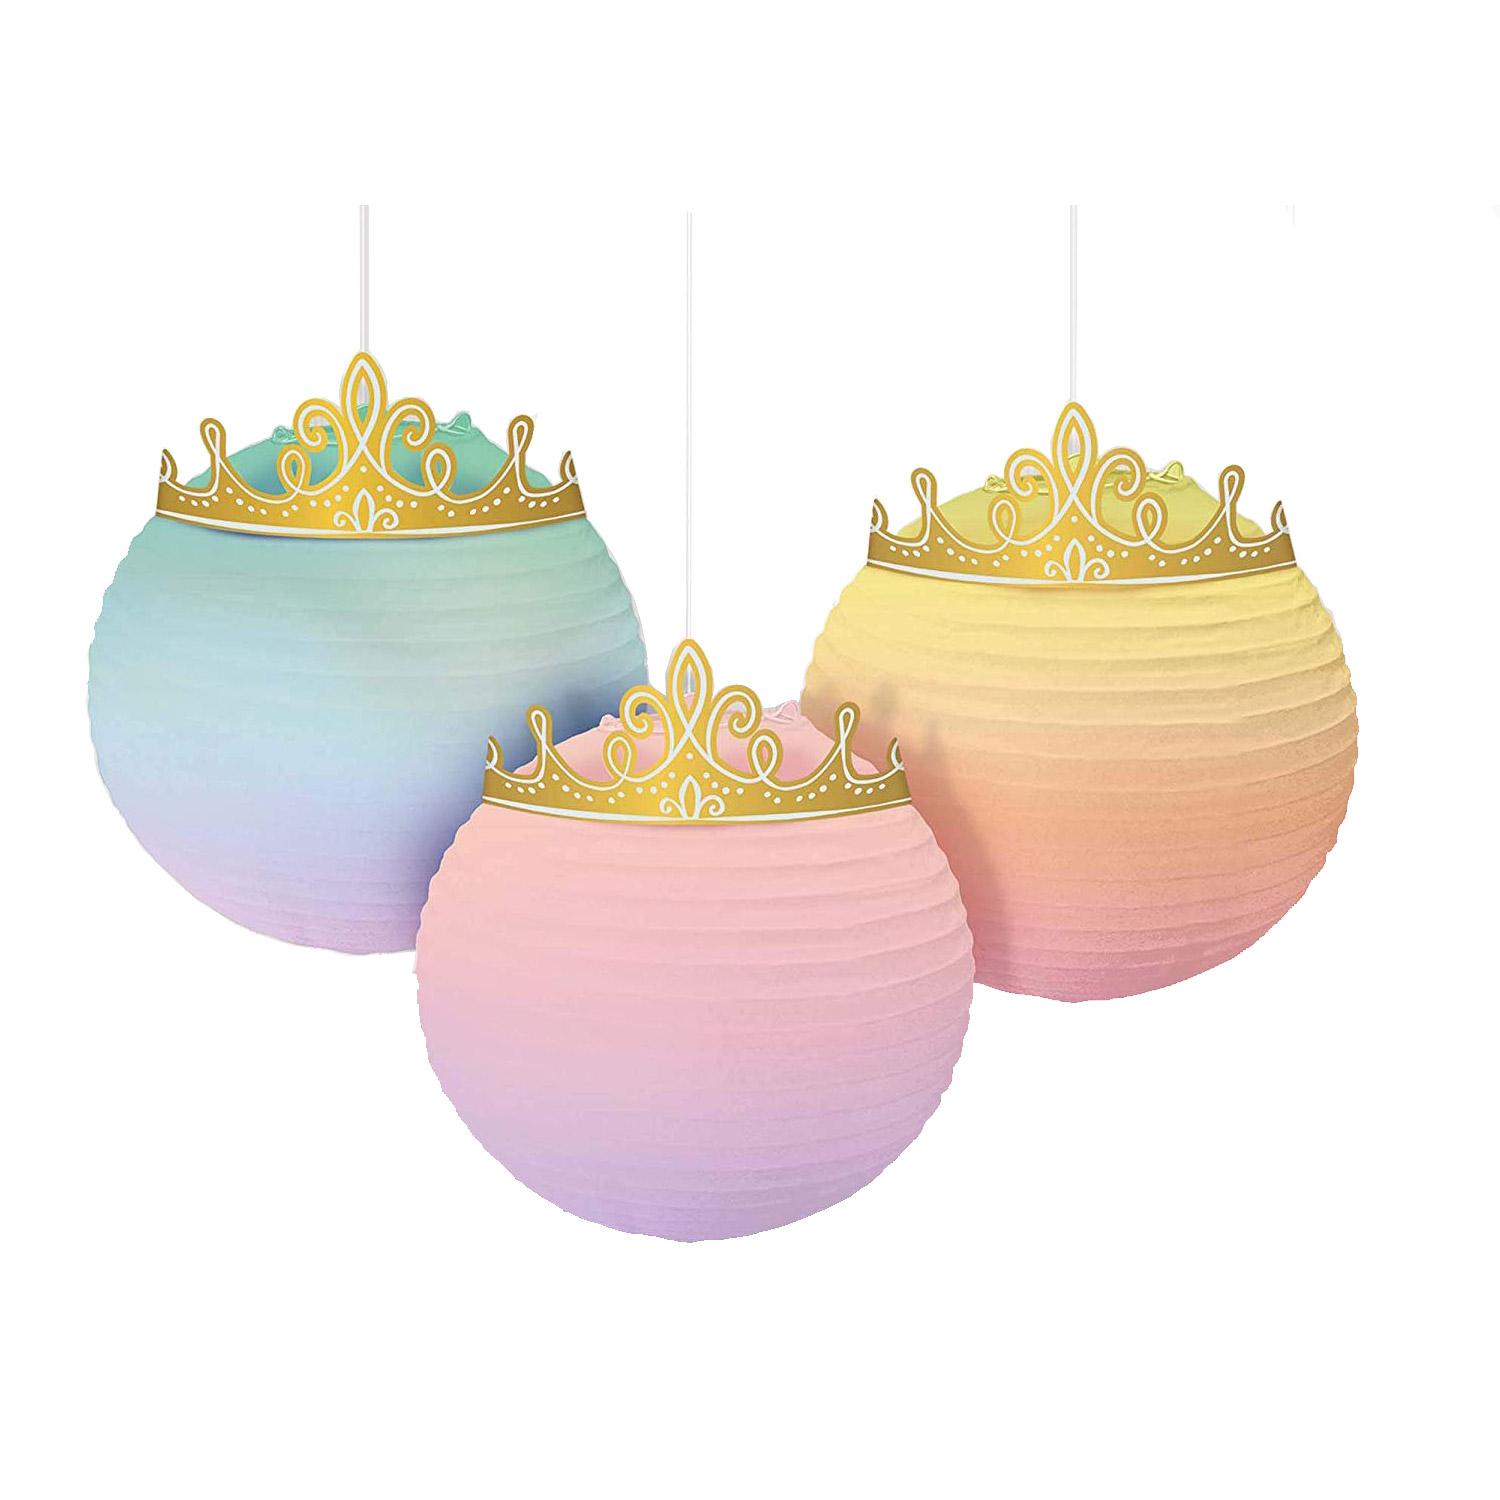 Disney Princess Paper & Foil Lantern Decoration 3pcs Decorations - Party Centre